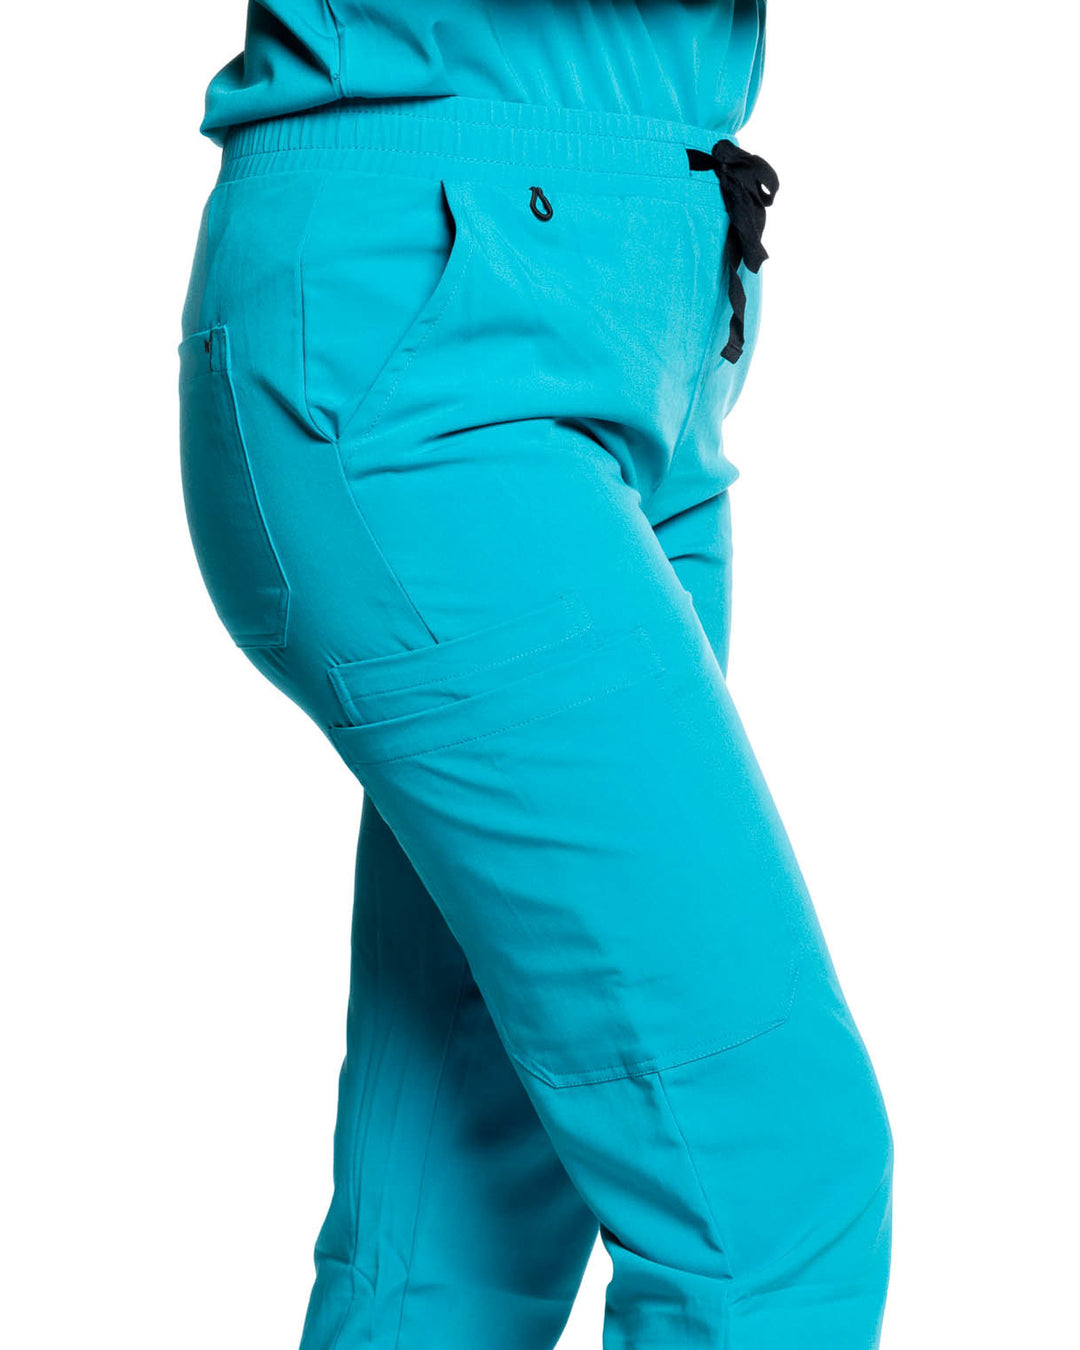 women's Caribbean Blue Jogger Scrub Pants - Jogger Scrubs by Millennials In Medicine (Mim Scrubs)